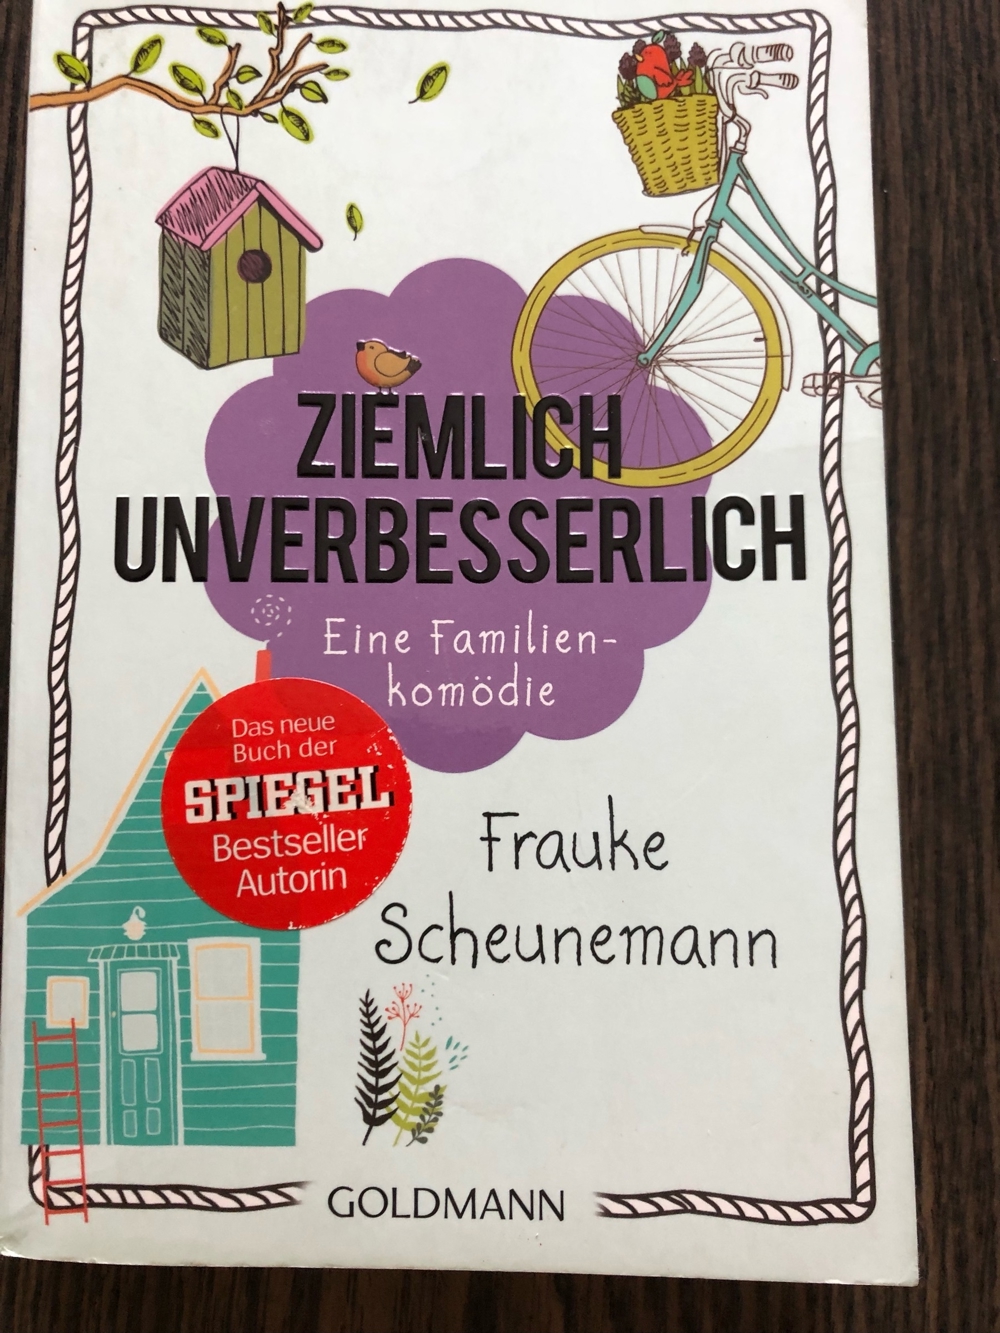 Ziemlich unverbesserlich, Frauke Scheunemann